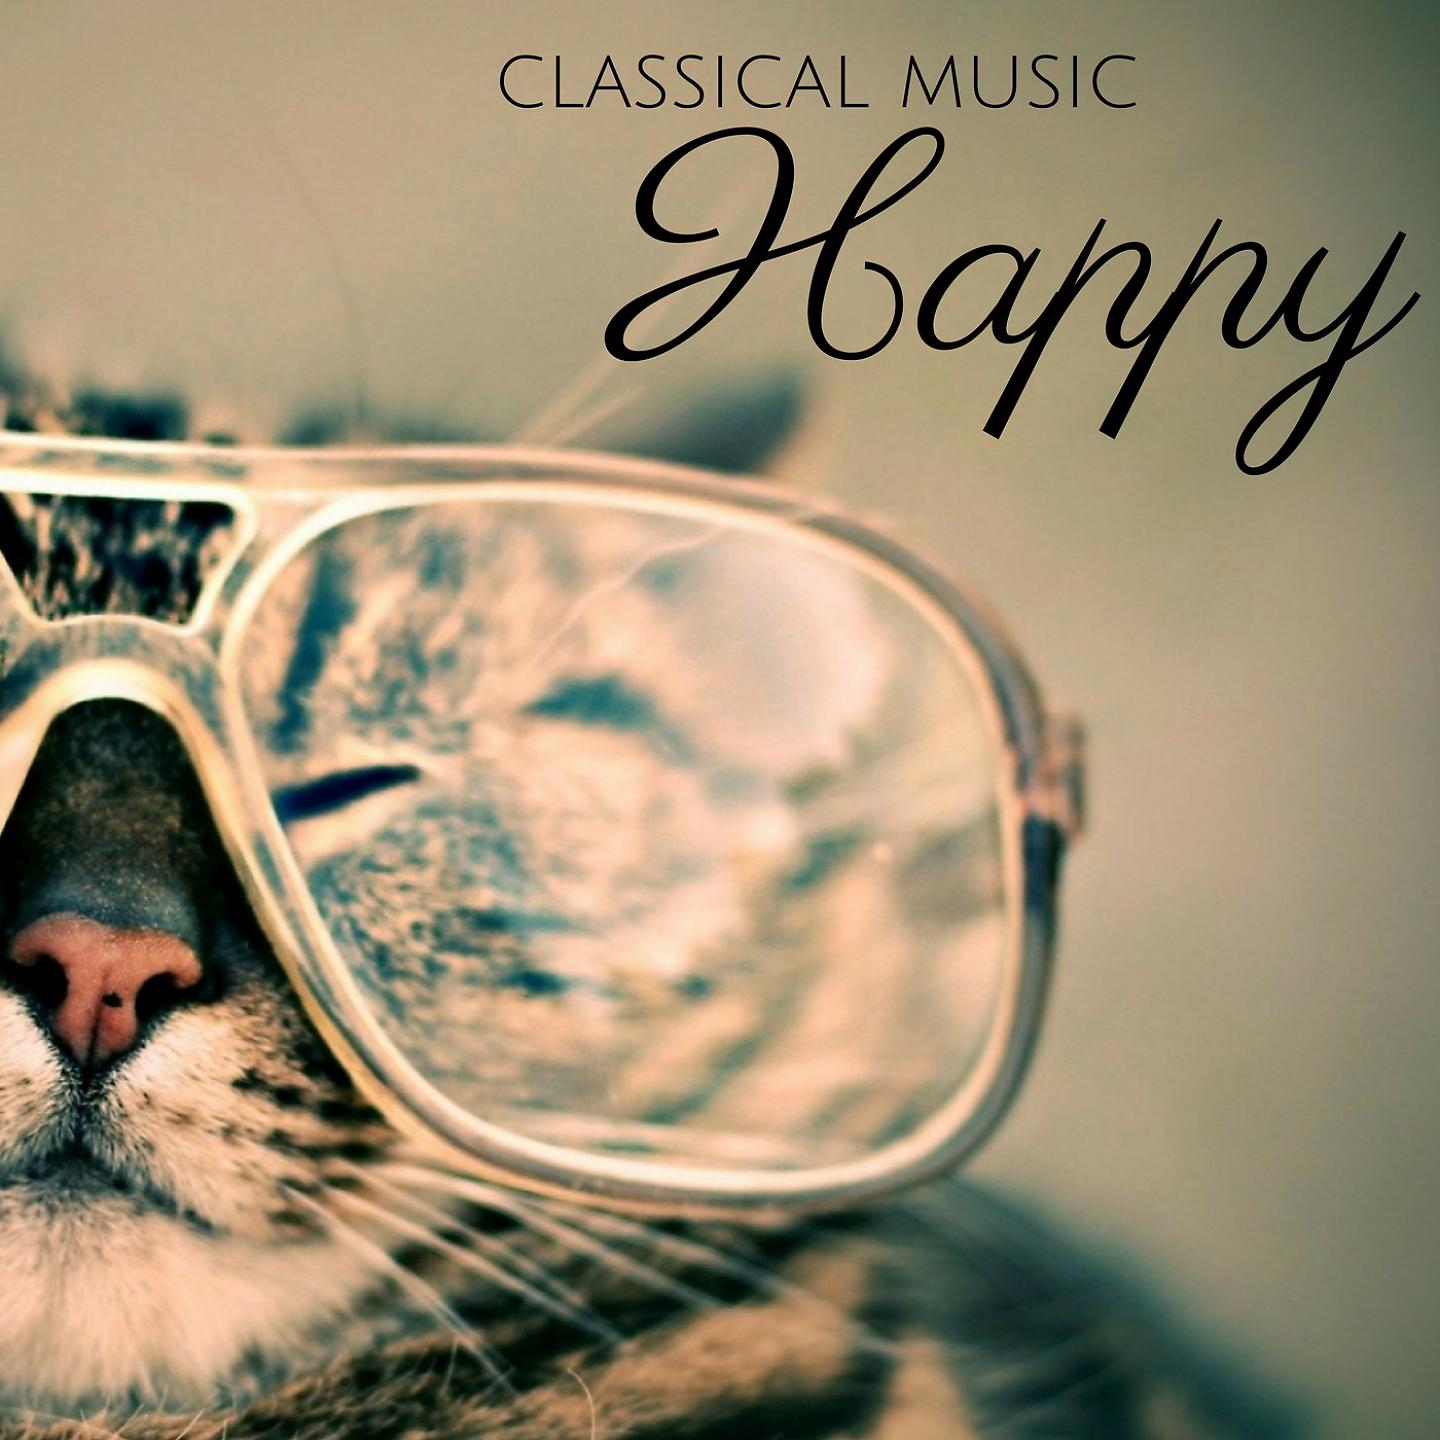 Постер альбома Happy Classical Music